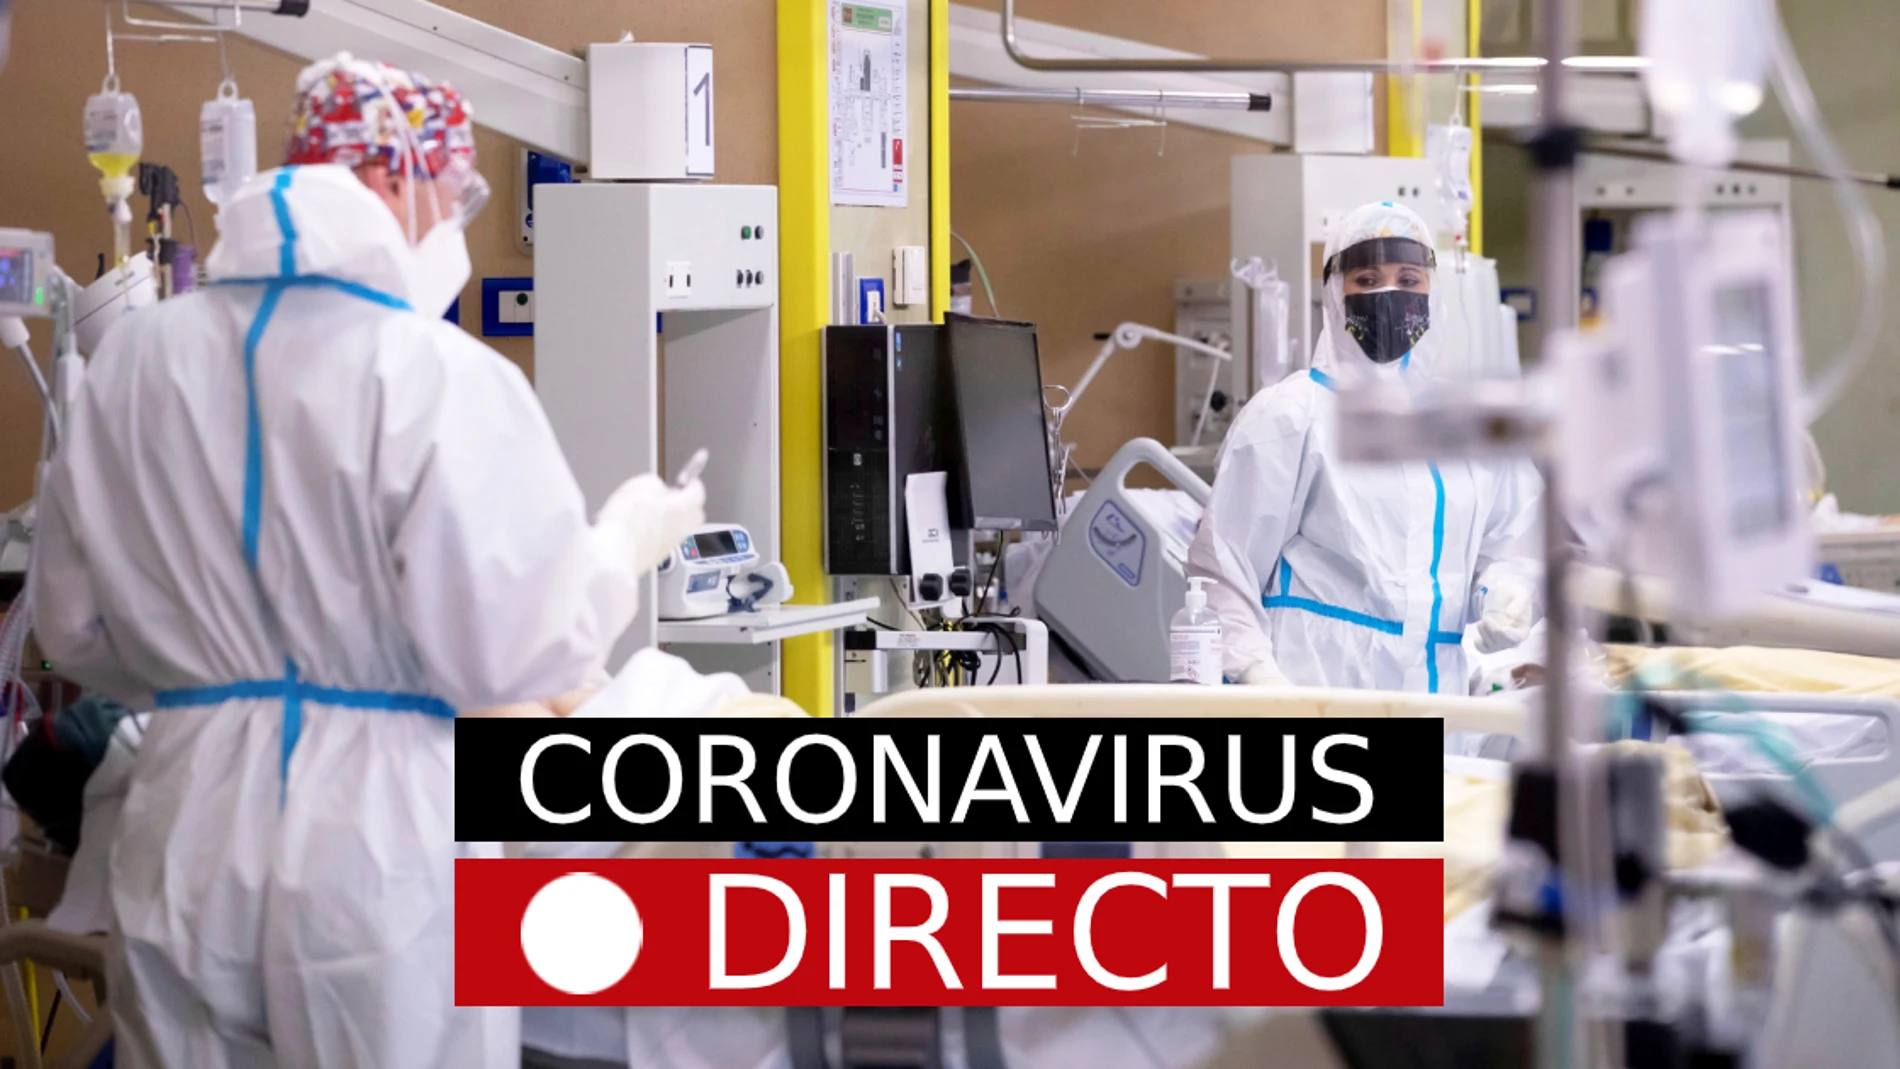 COVID-19, hoy | Noticias del Coronavirus en España, nuevas medidas y última hora, en directo